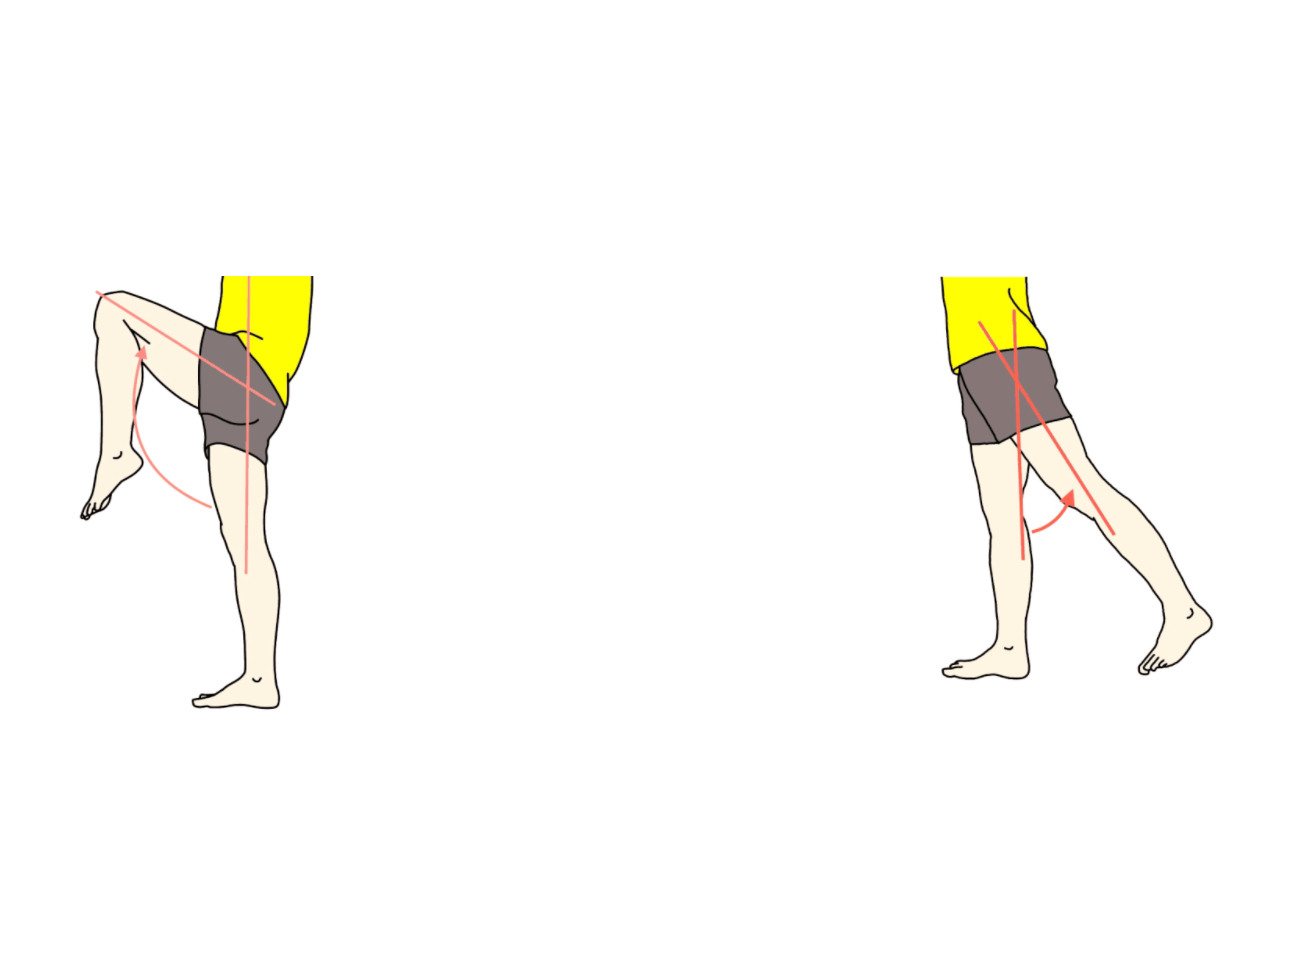 股関節の屈曲と伸展の拮抗筋